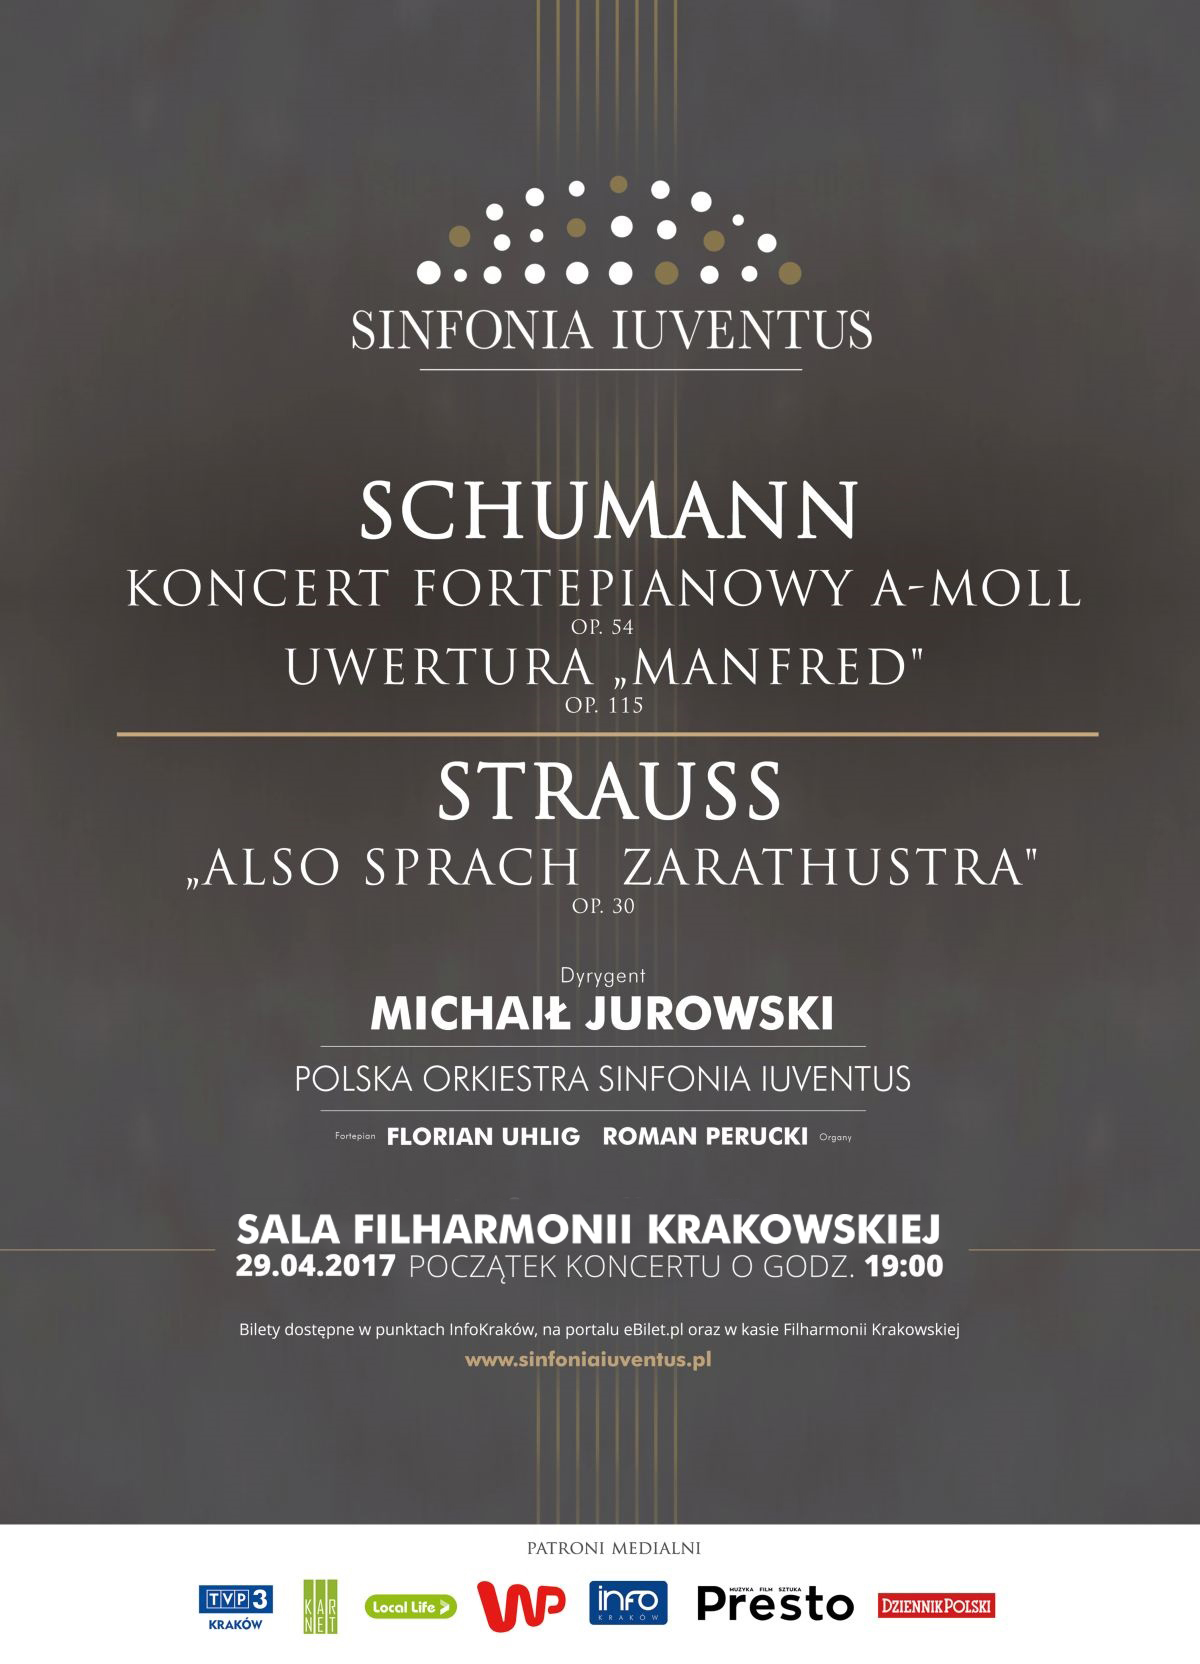 Wyjątkowy koncert Sinfonii Iuventus już 29. kwietnia! 